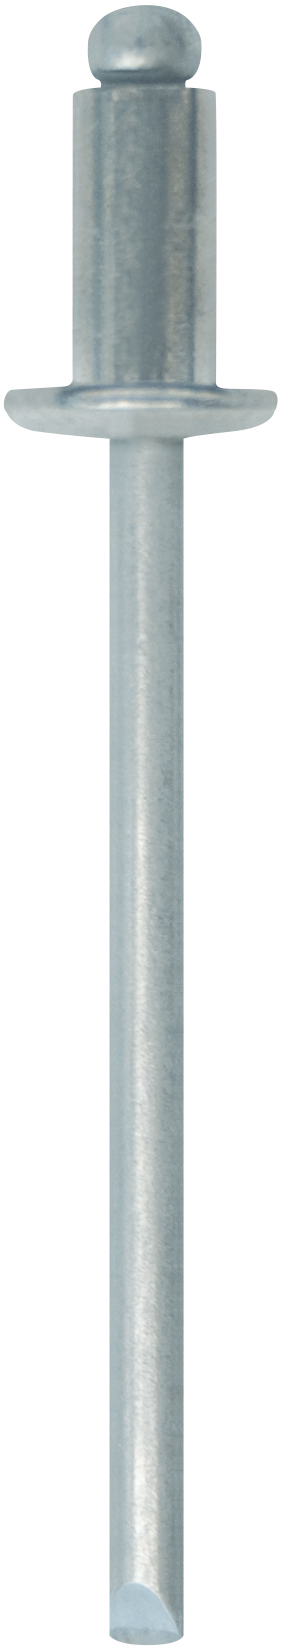 Cod. 03000B4001600 - RIVEX Rivetto in acciaio